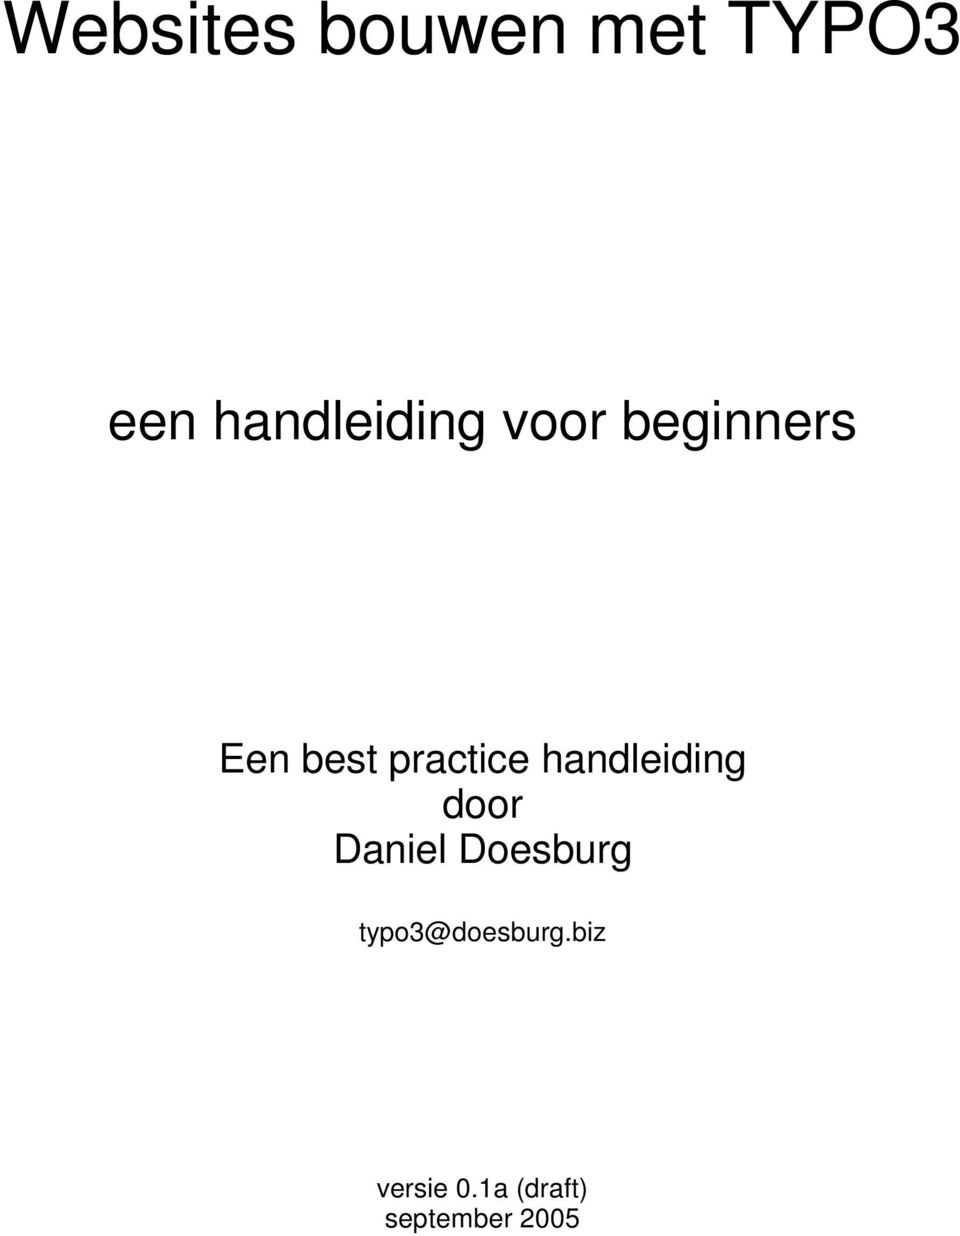 practice handleiding door Daniel